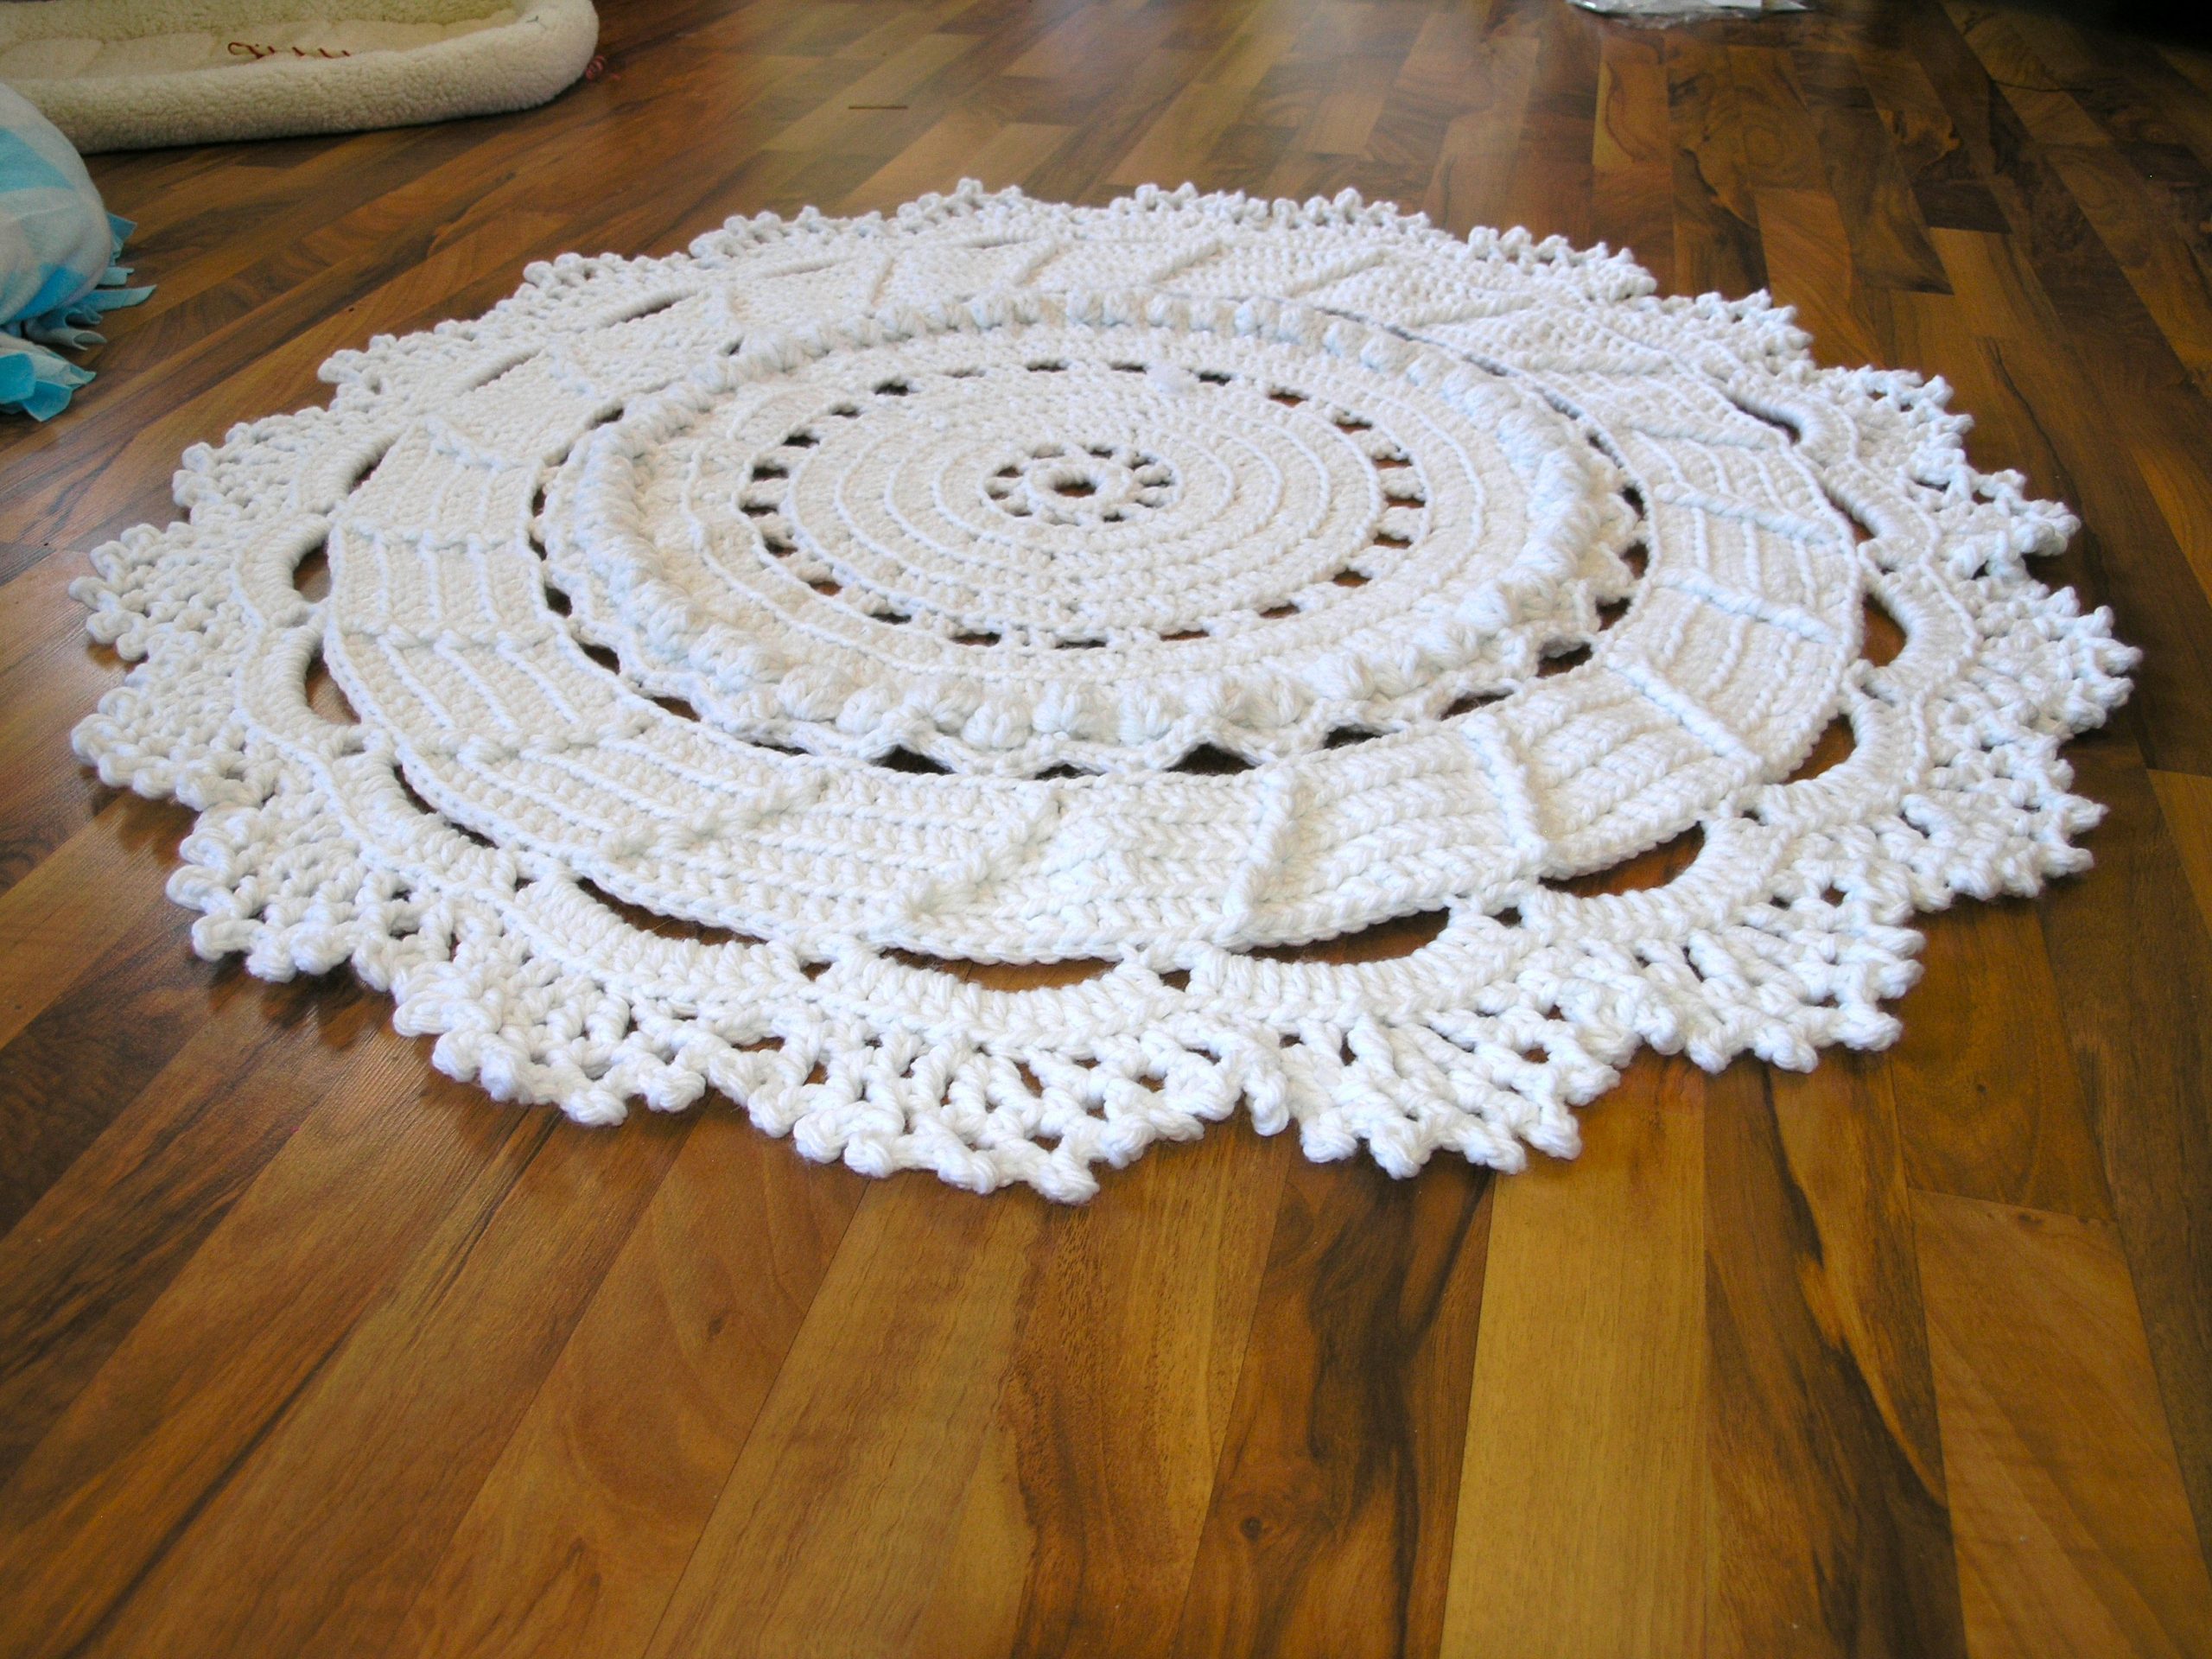 Giant crochet doily rug